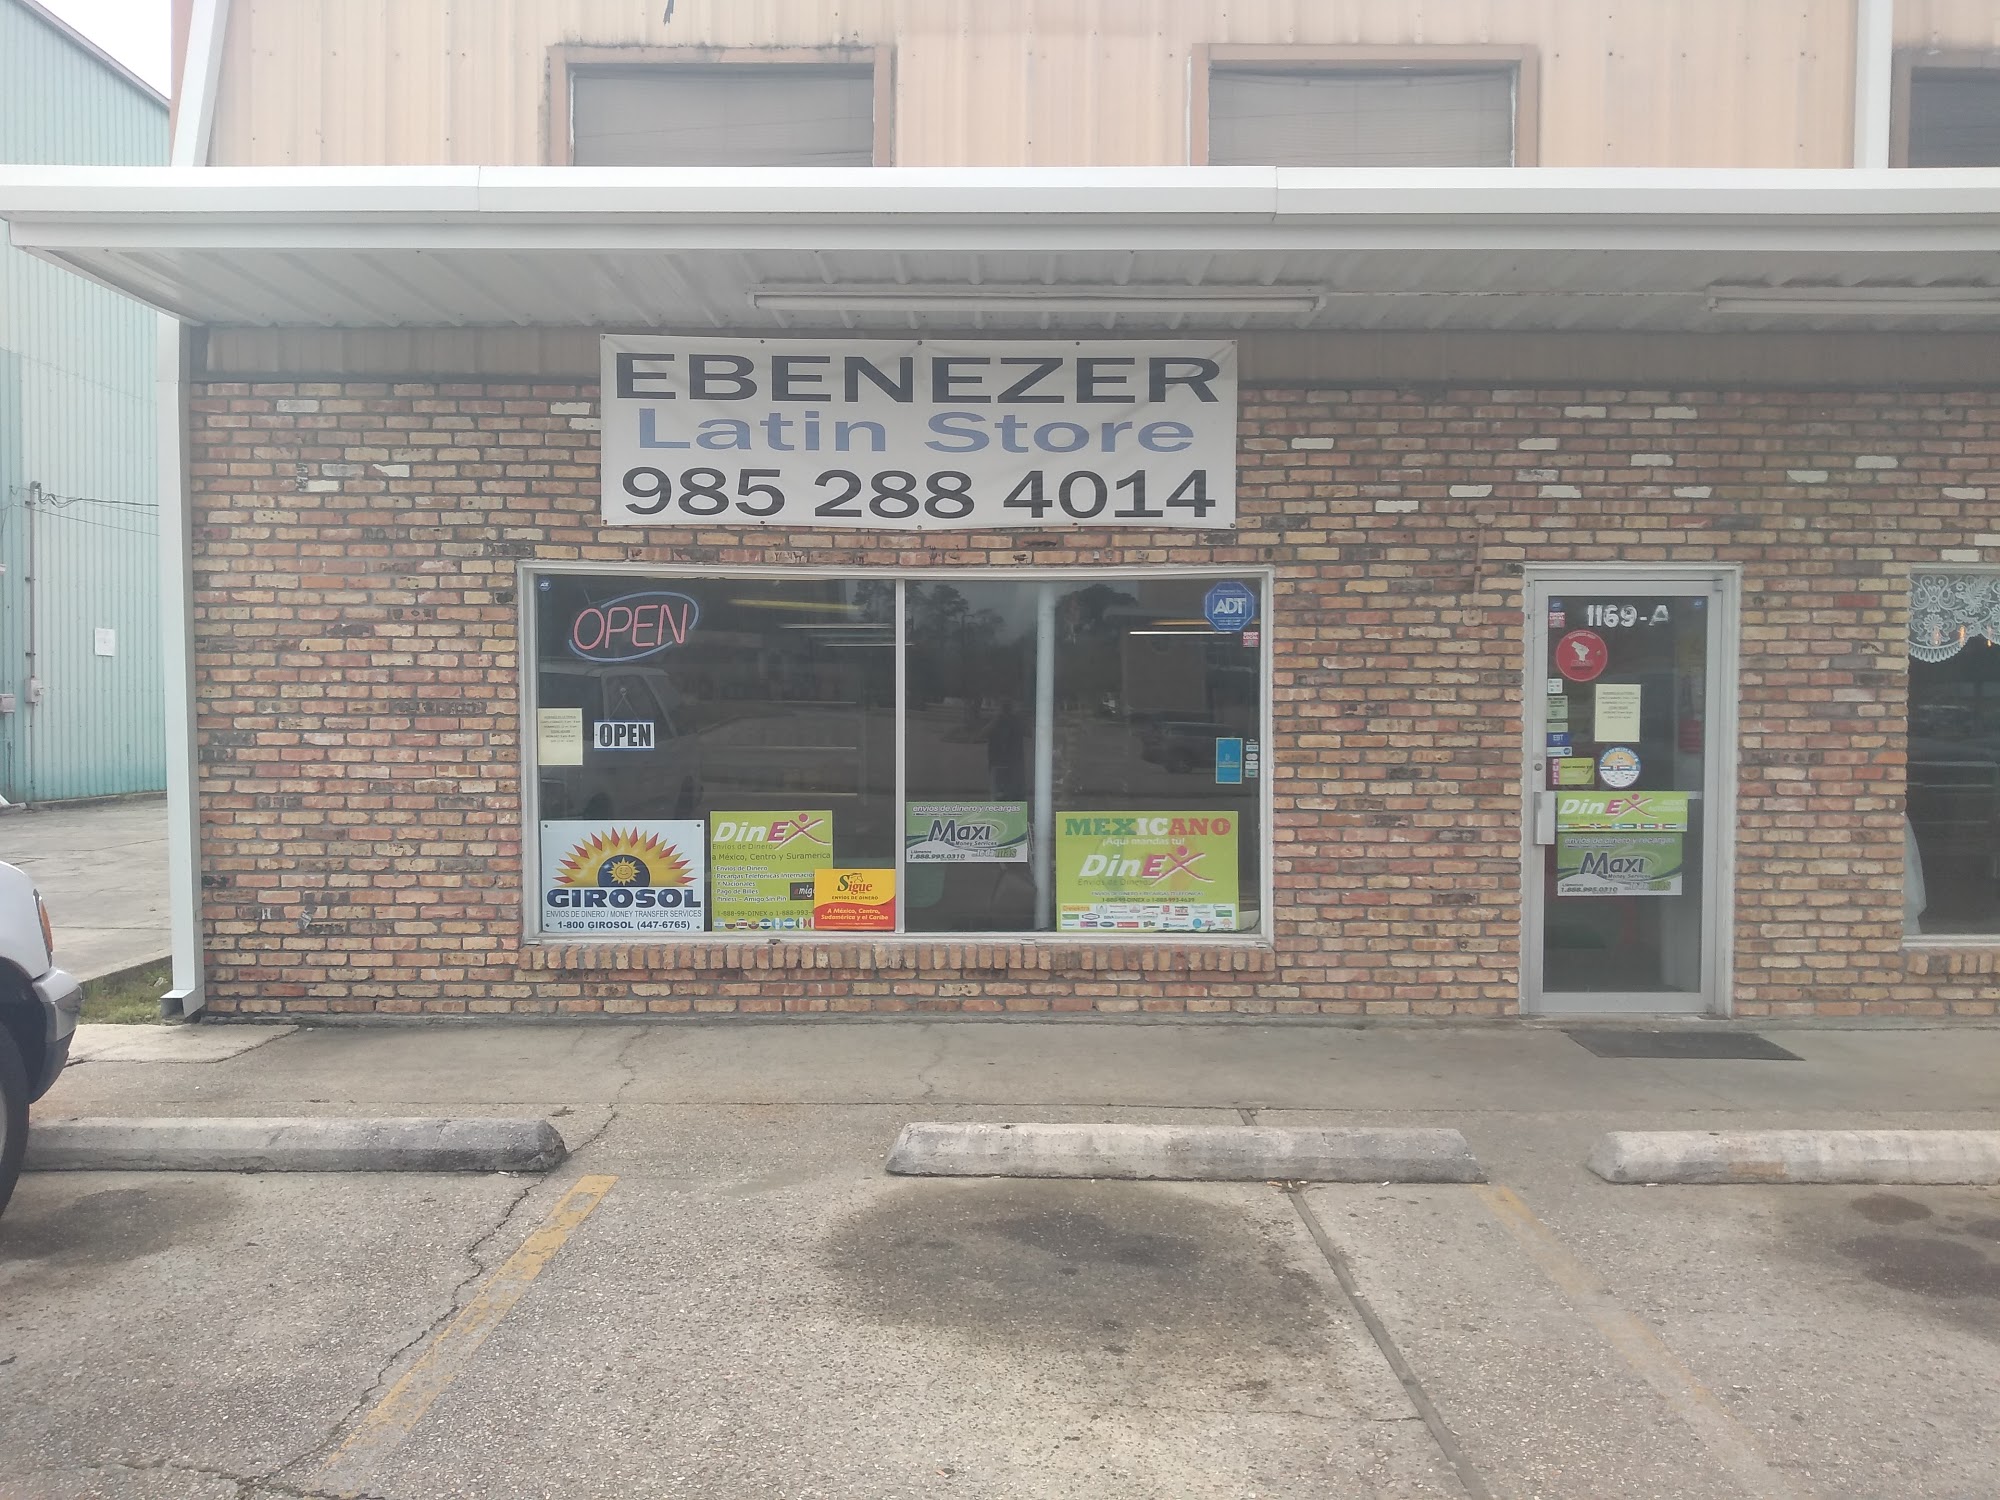 Ebenezer Latin store